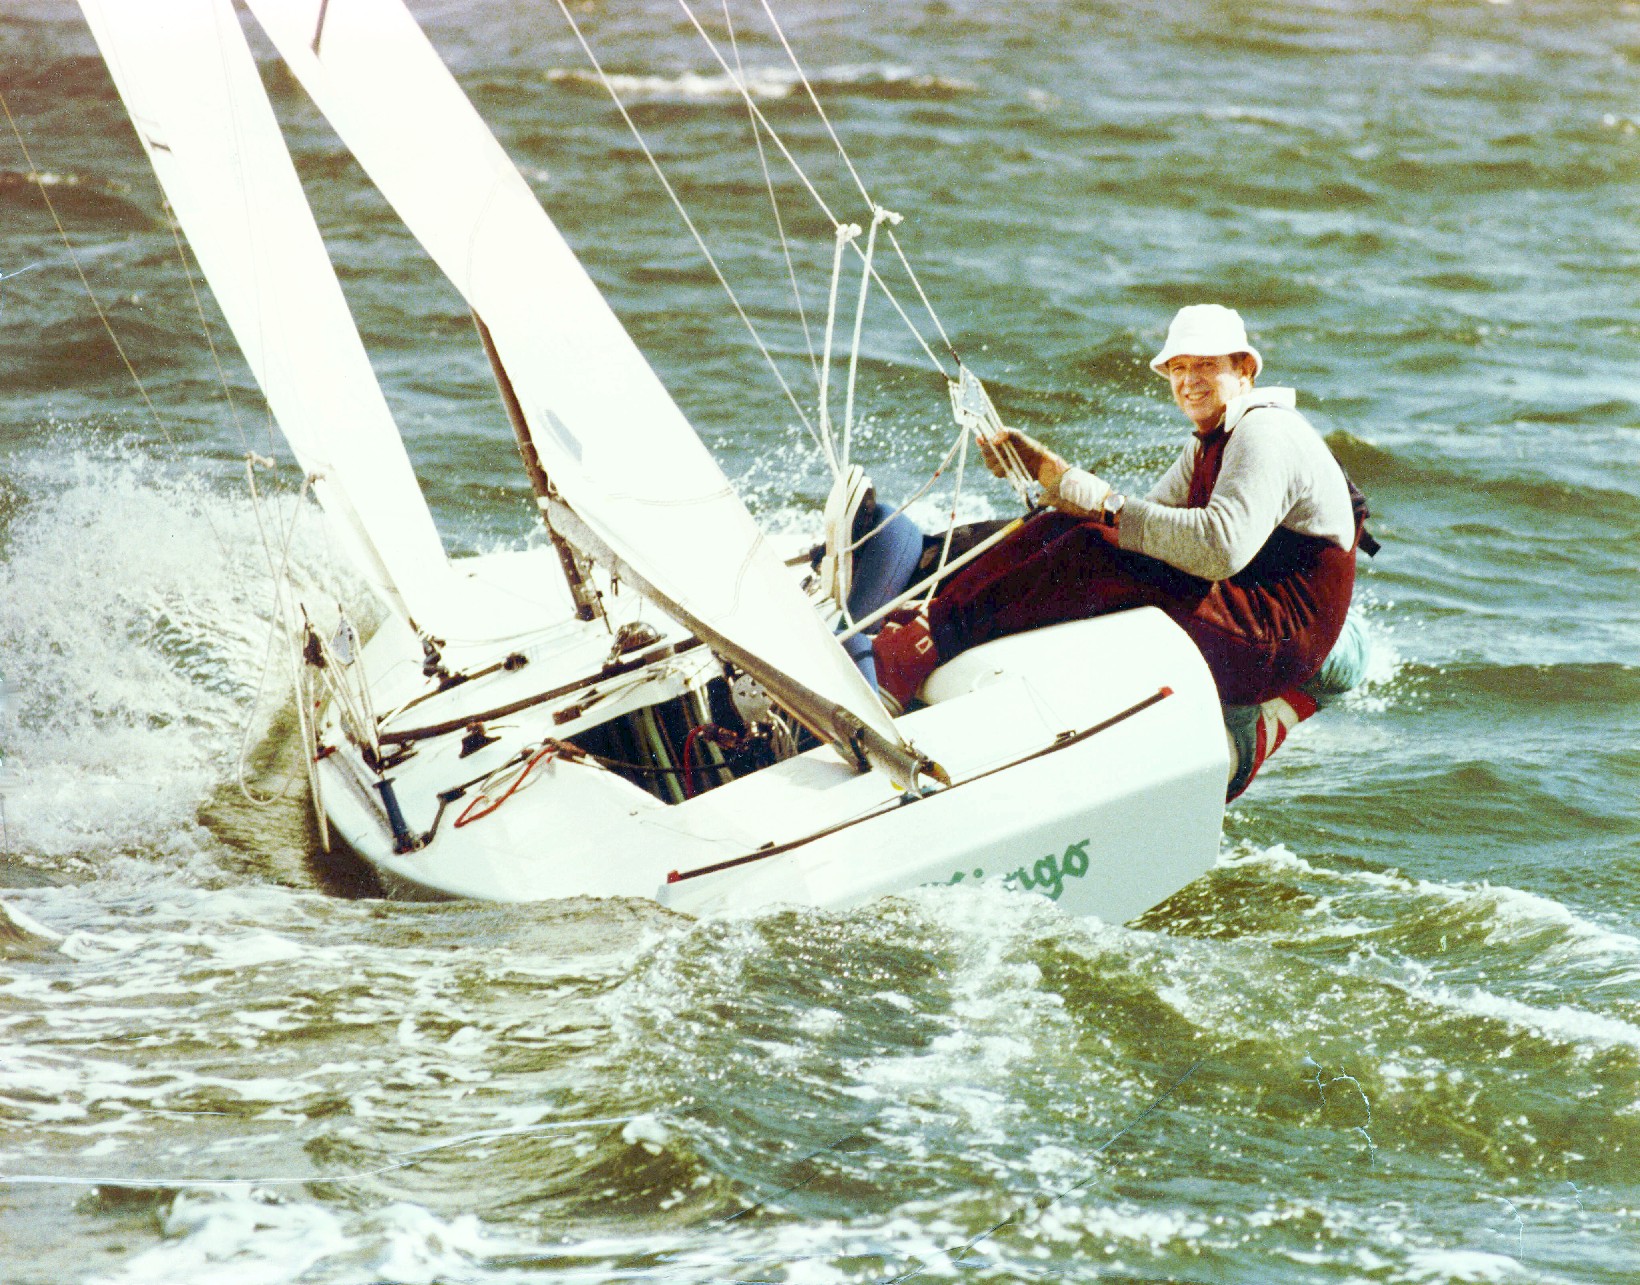 star class racing sailboat